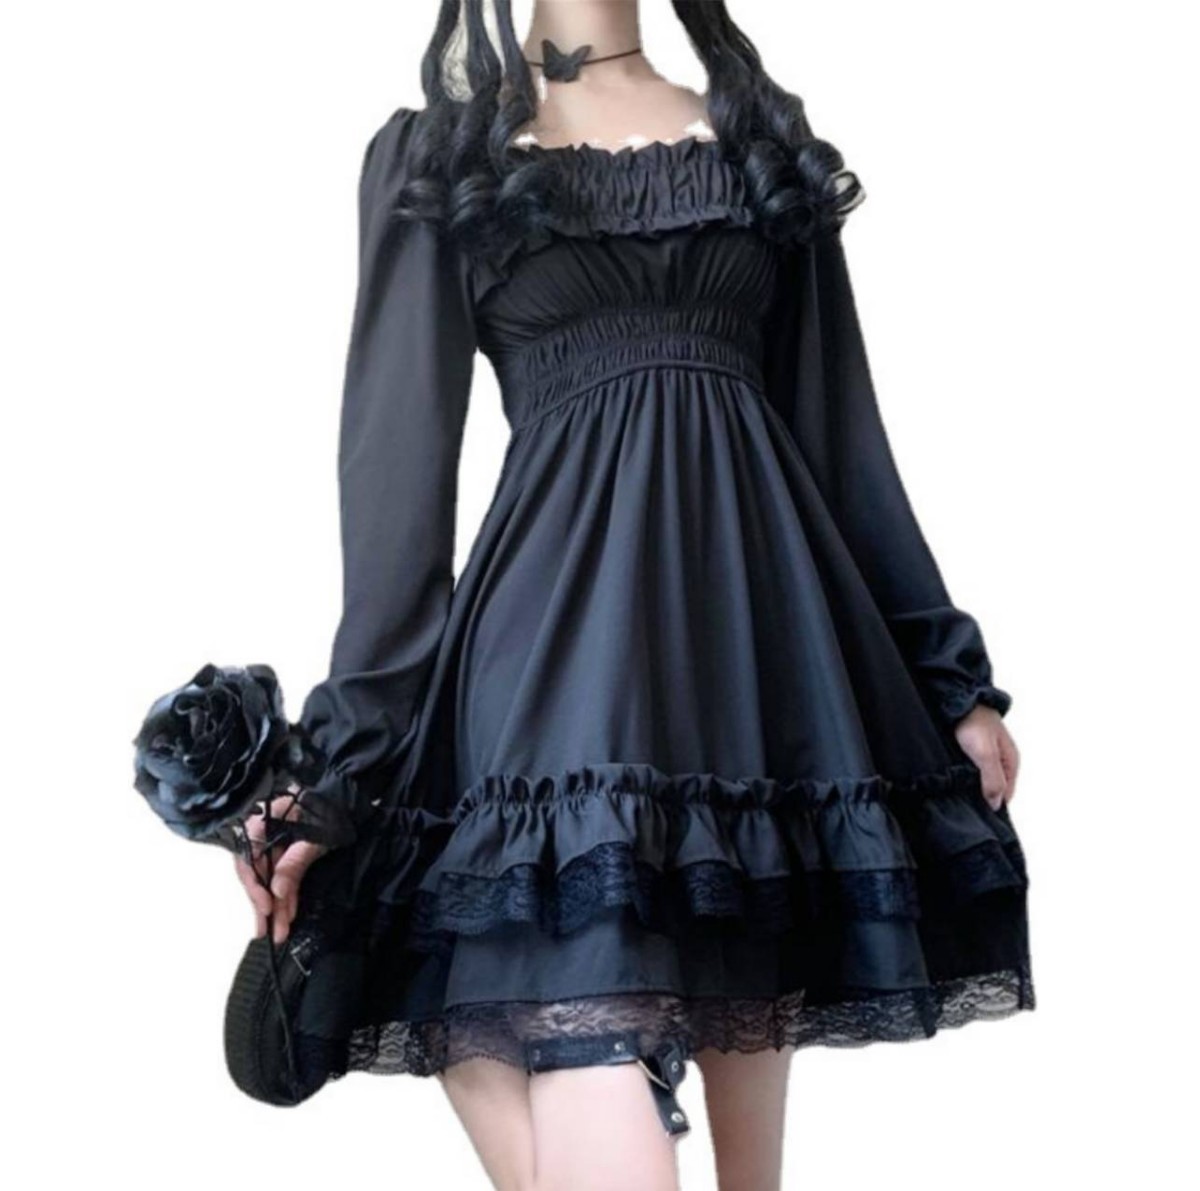  костюмированная игра Gothic and Lolita гонки One-piece черный сарафан axes femme Mini One-piece черный 